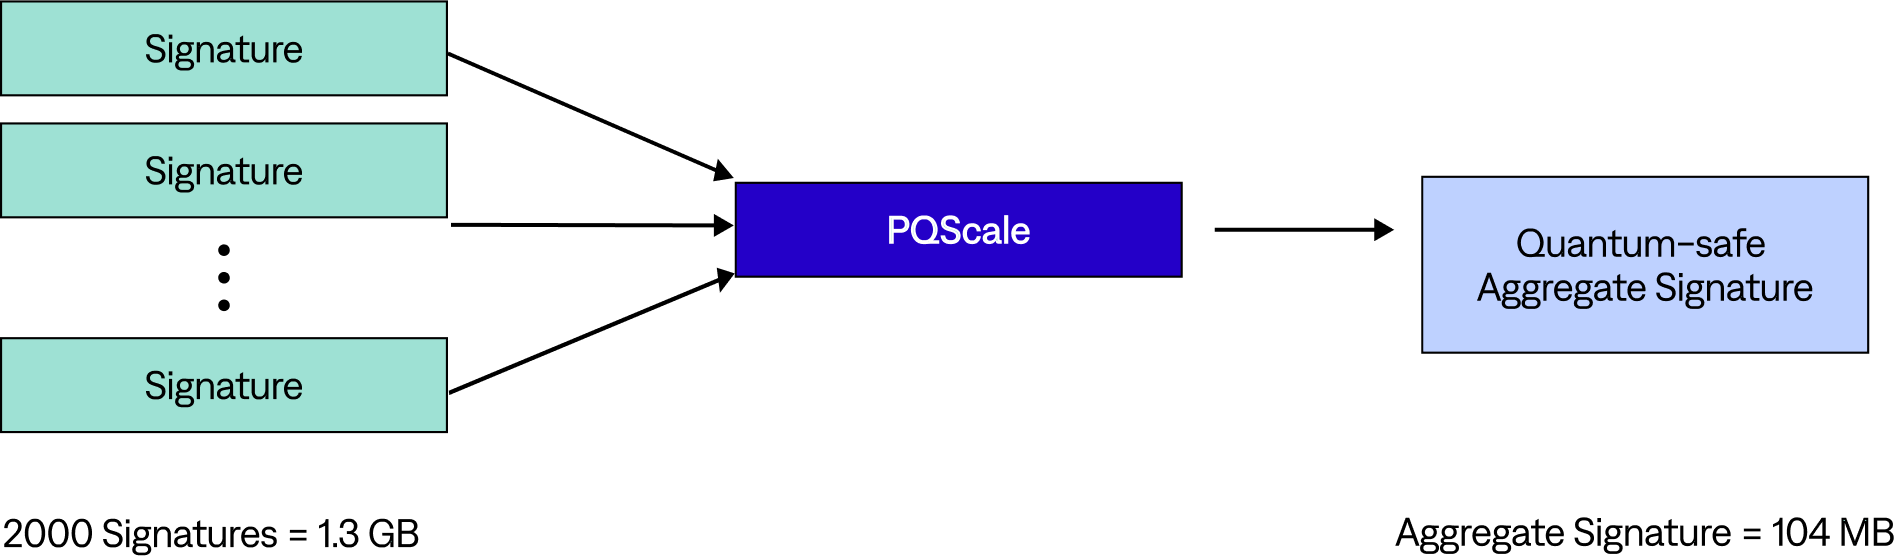 PQScale diagram